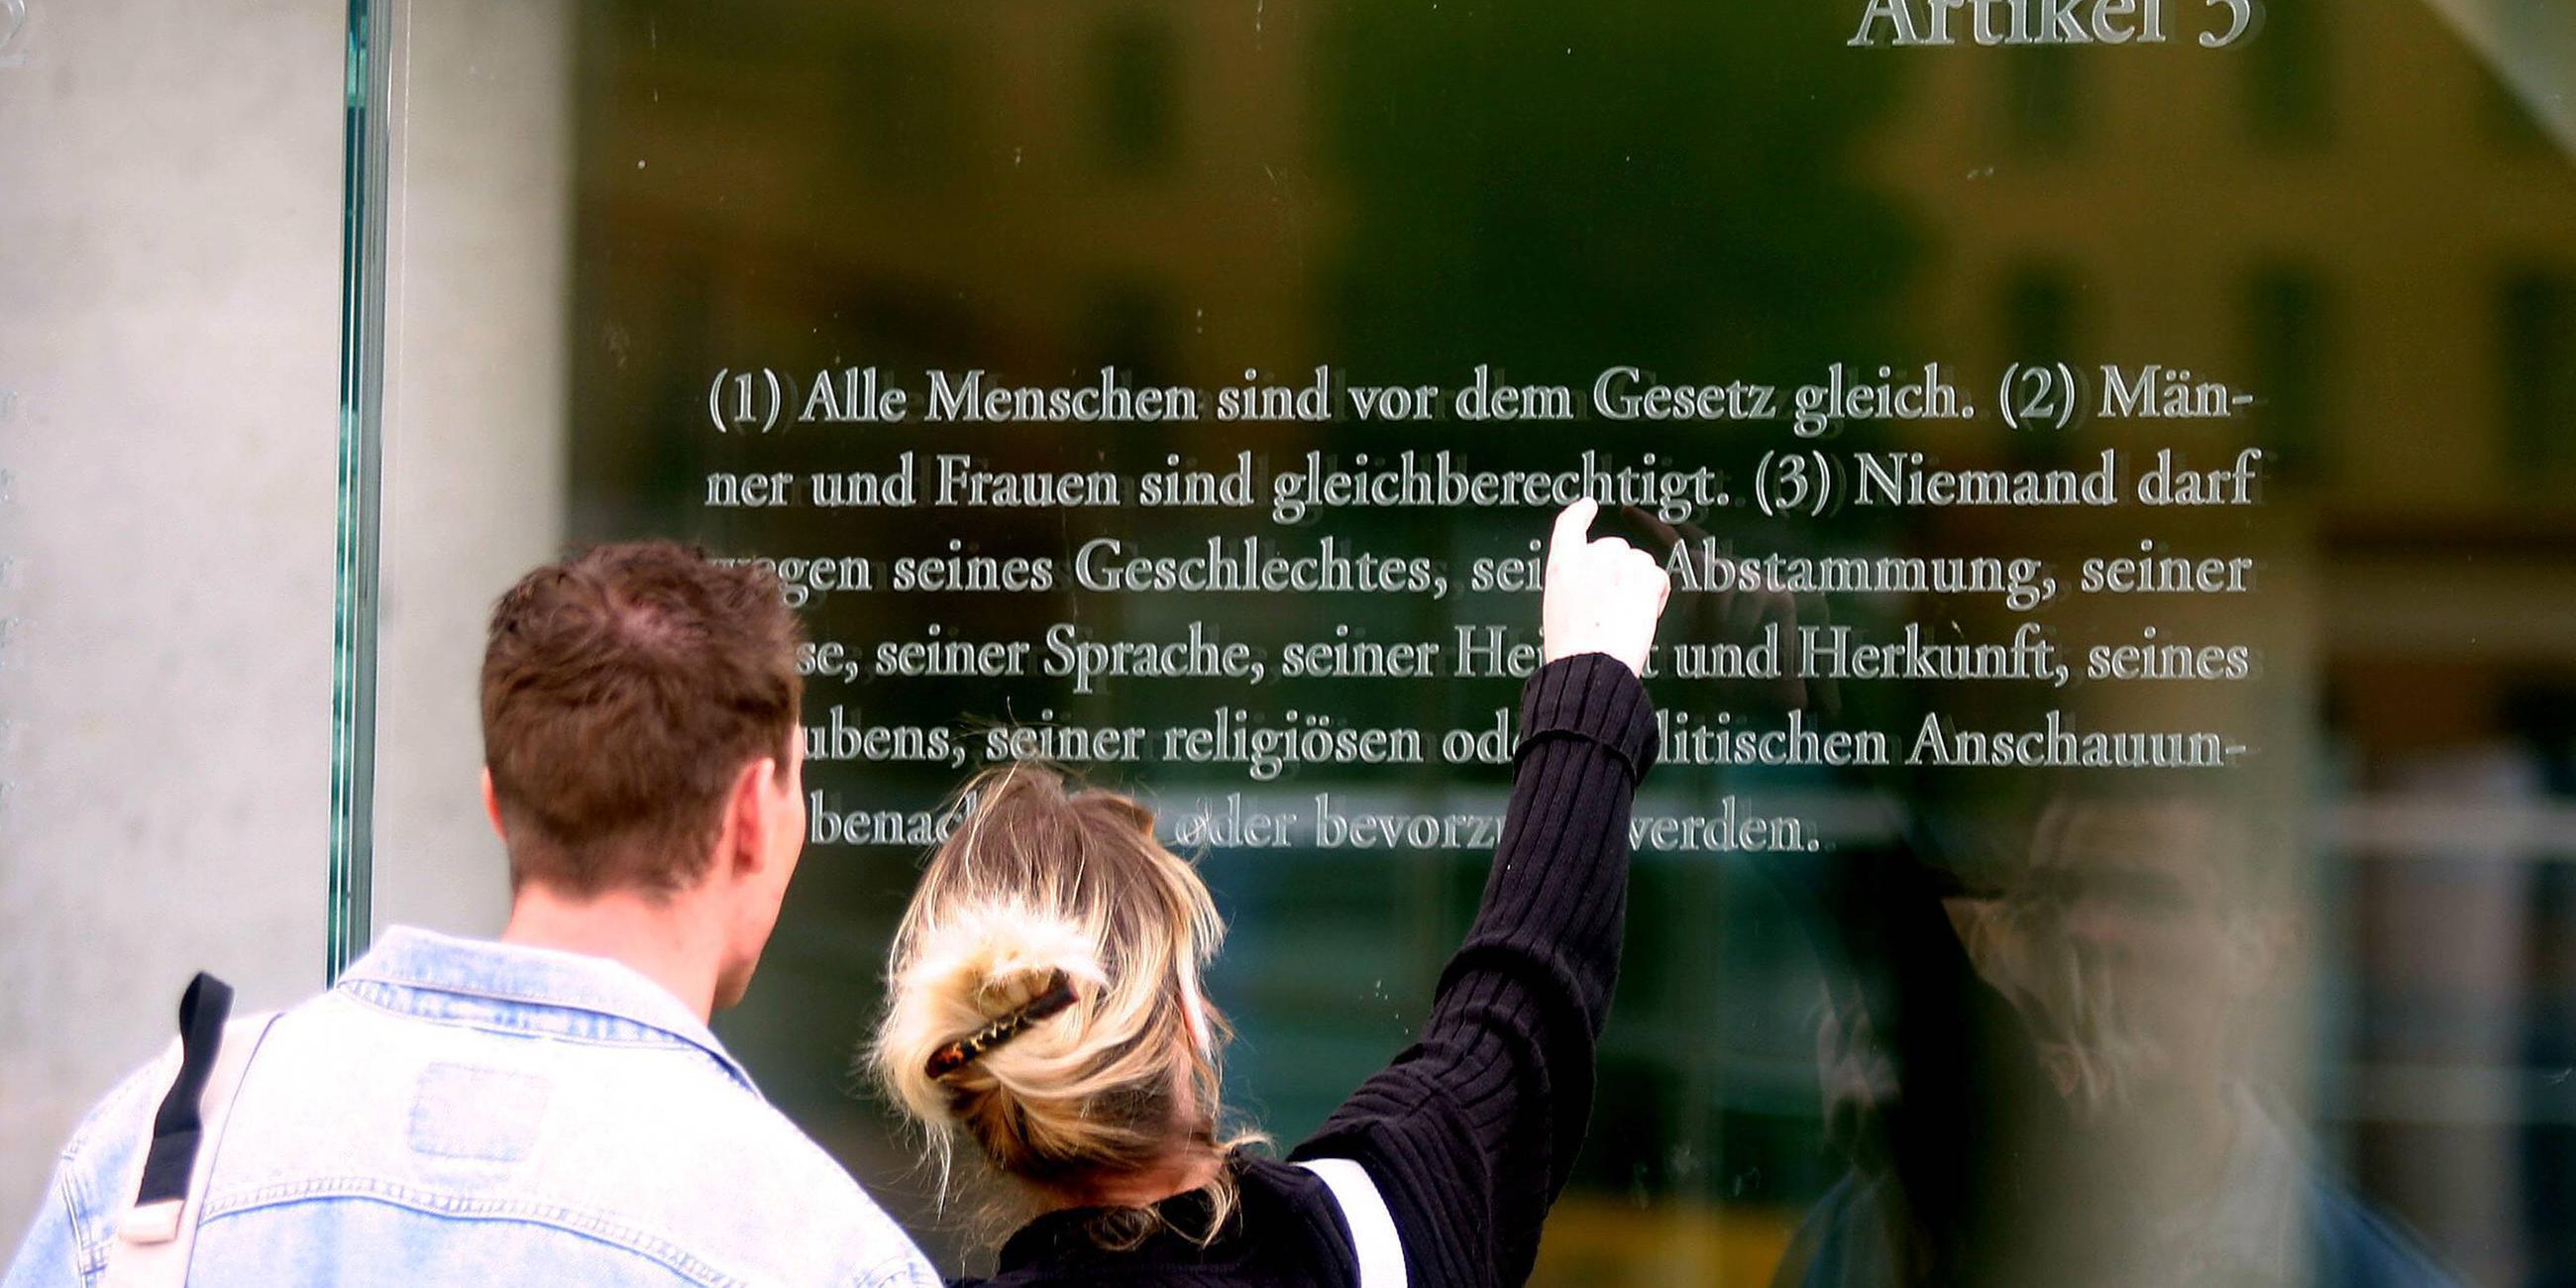 Ein Mann und eine Frau stehen vor einer Glaswand, auf der Artikel 3 des Grundgesetzes zu lesen ist.